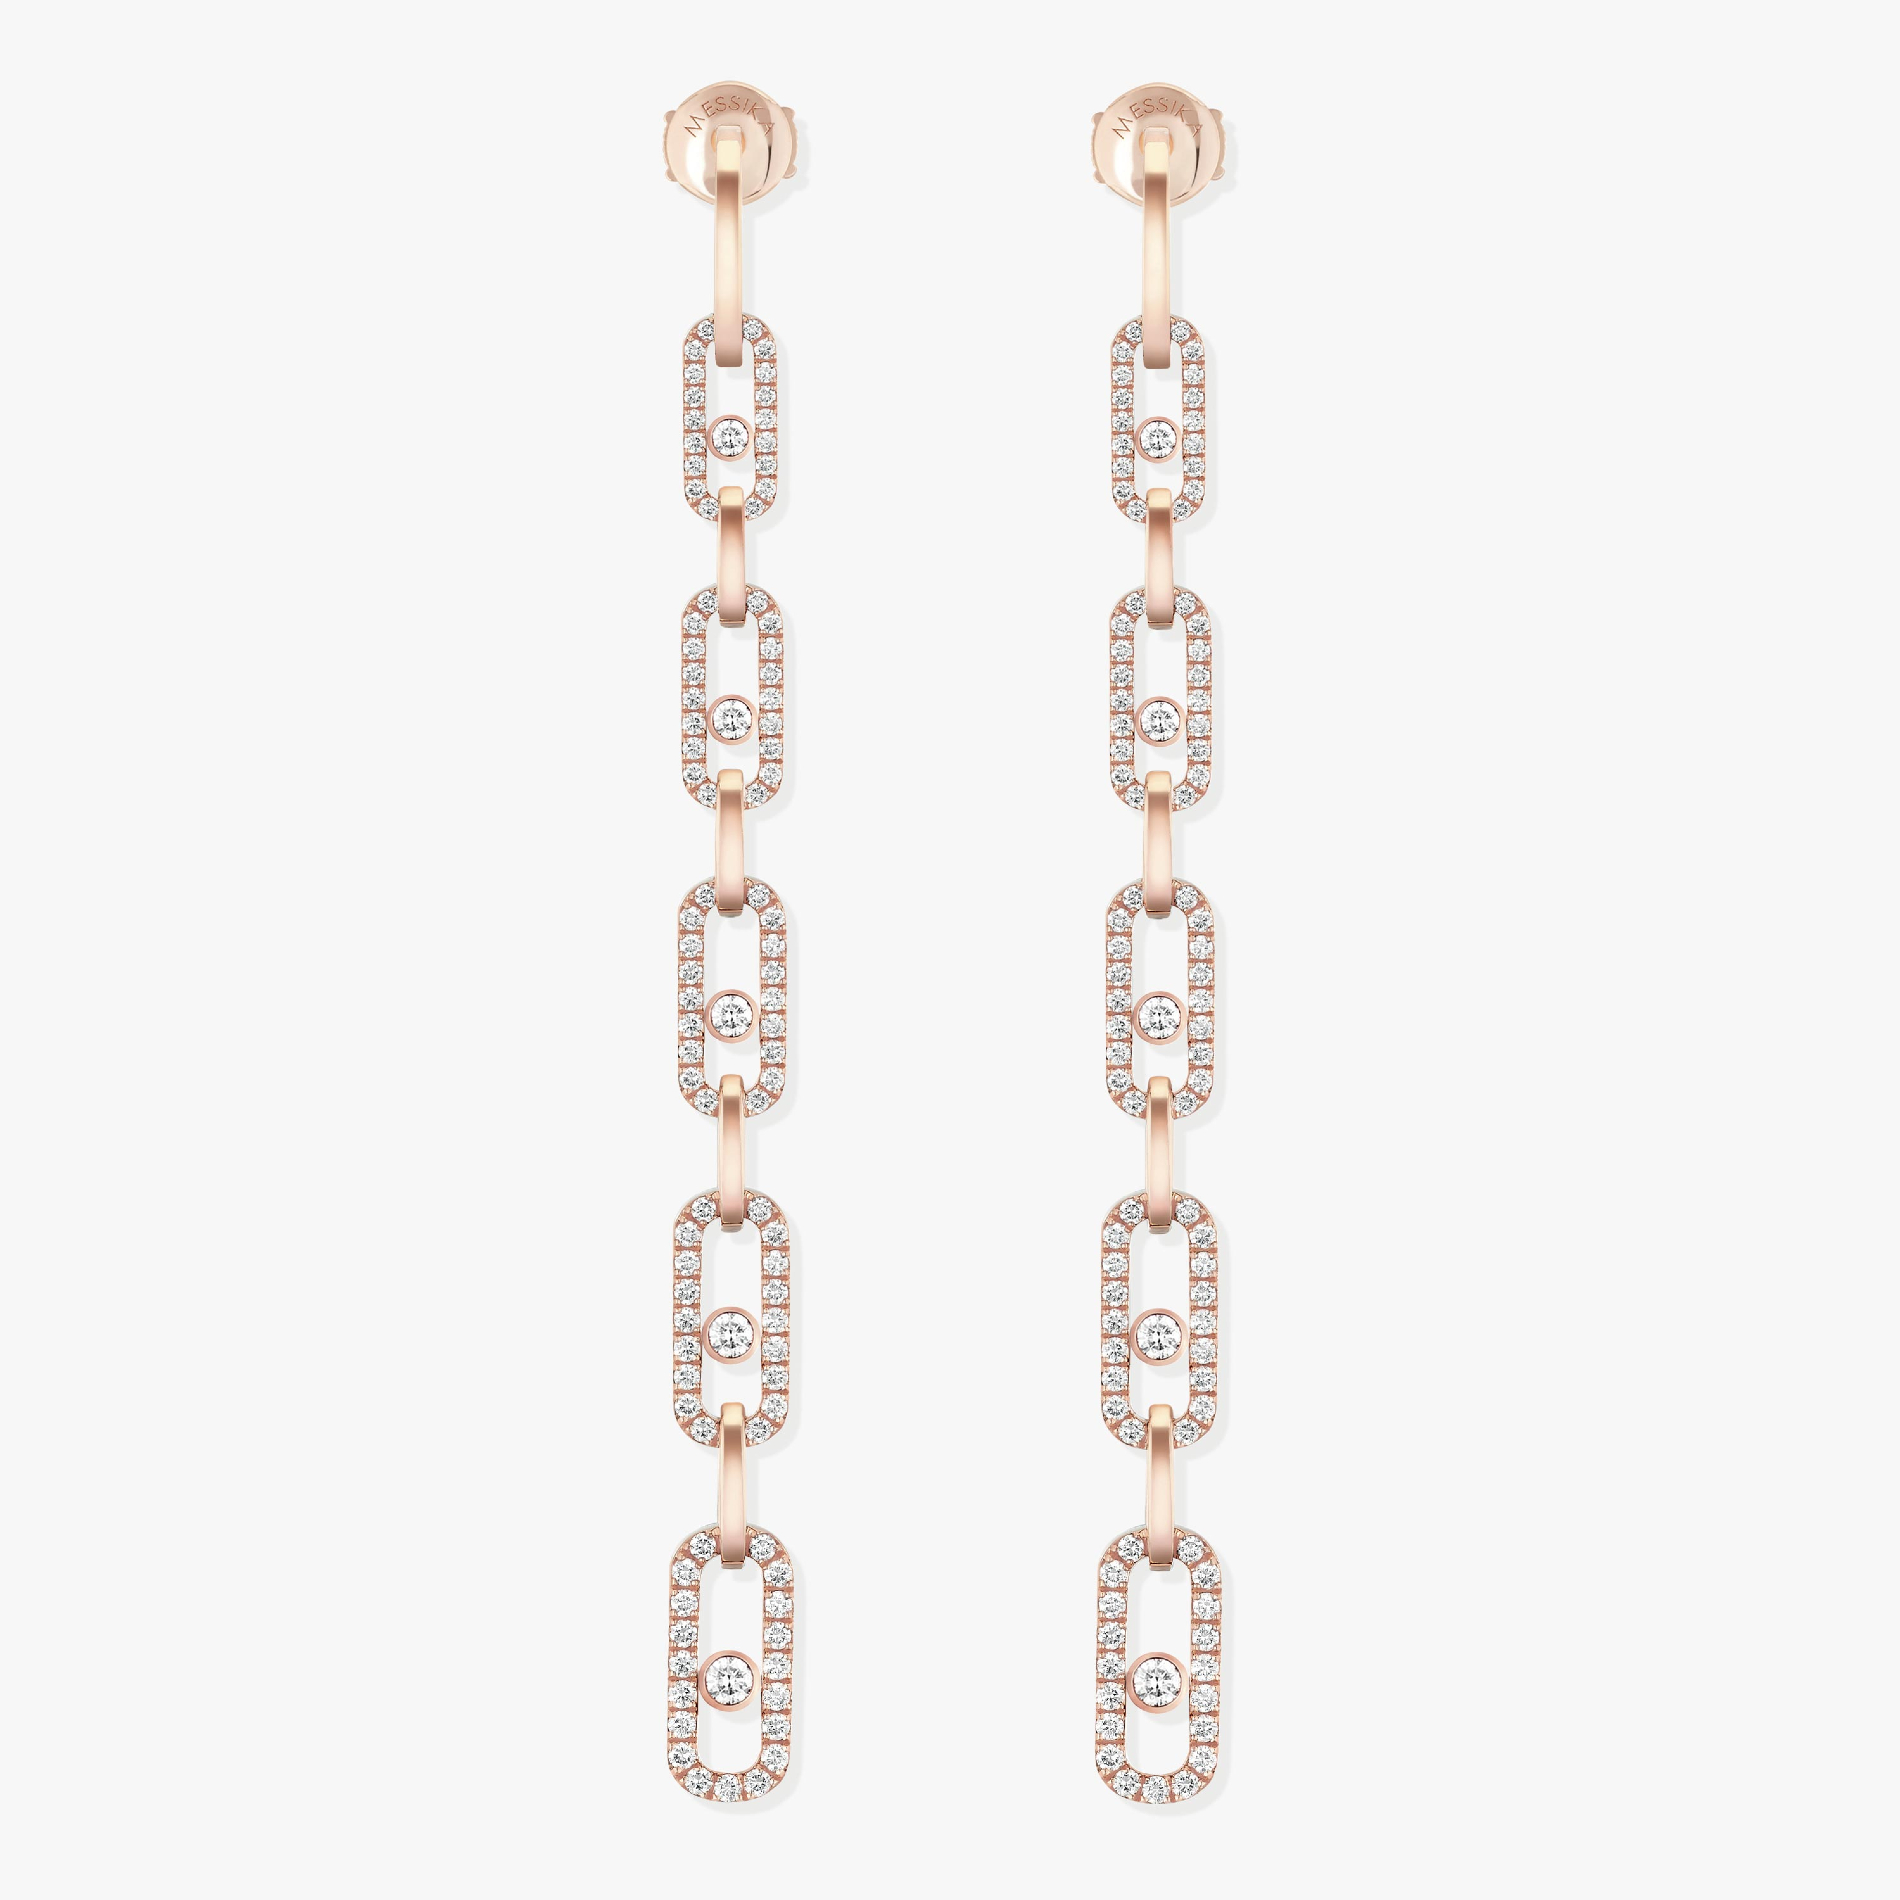 Move Link Multi Pendant Earrings Pink Gold For Her Diamond Earrings 12011-PG